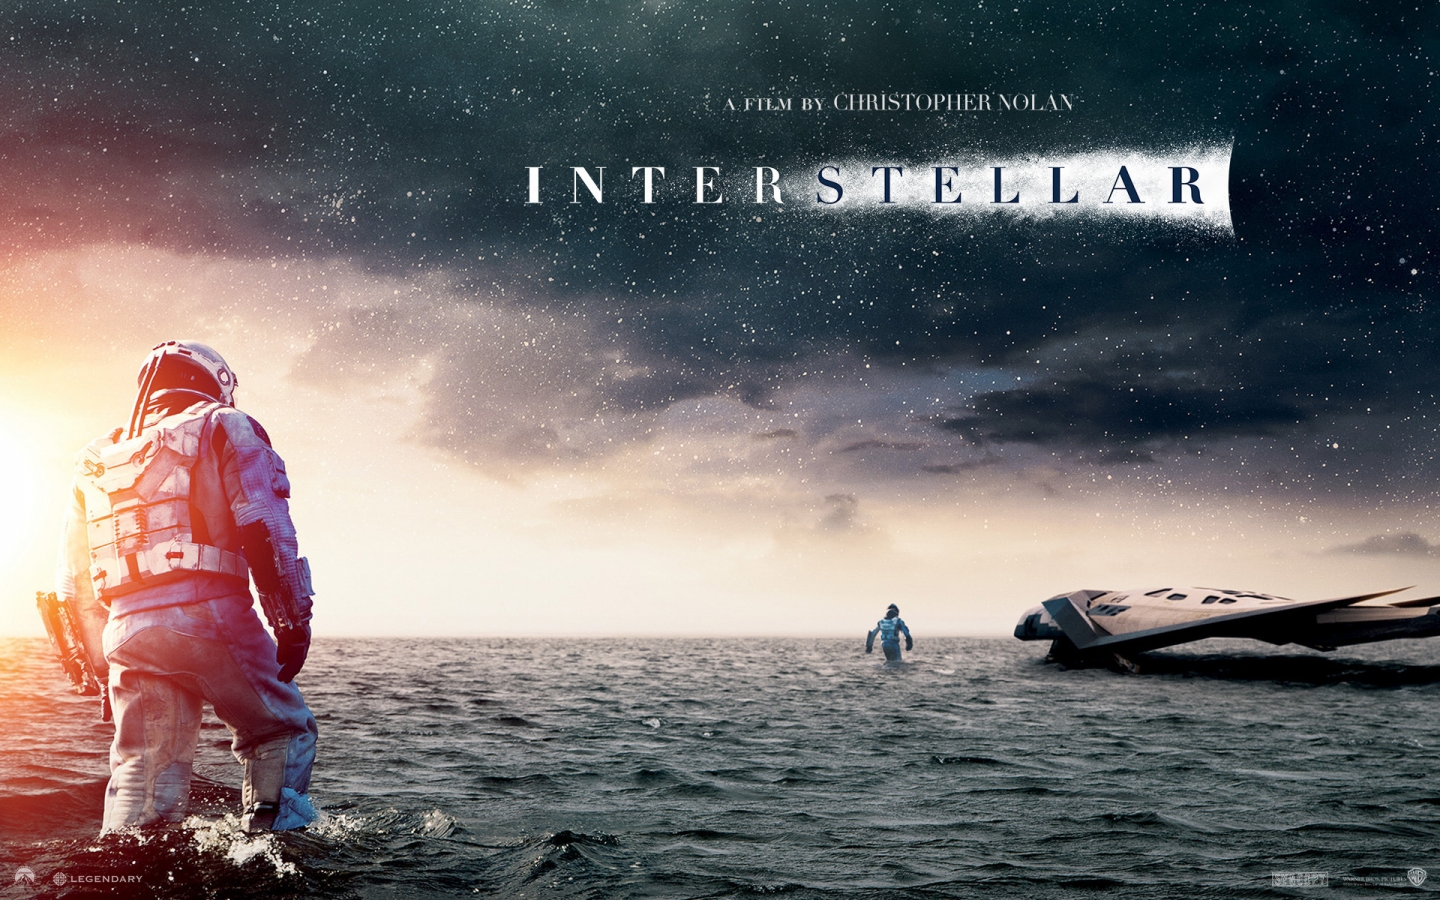 Interstellar 2014 Movie for 1440 x 900 widescreen resolution